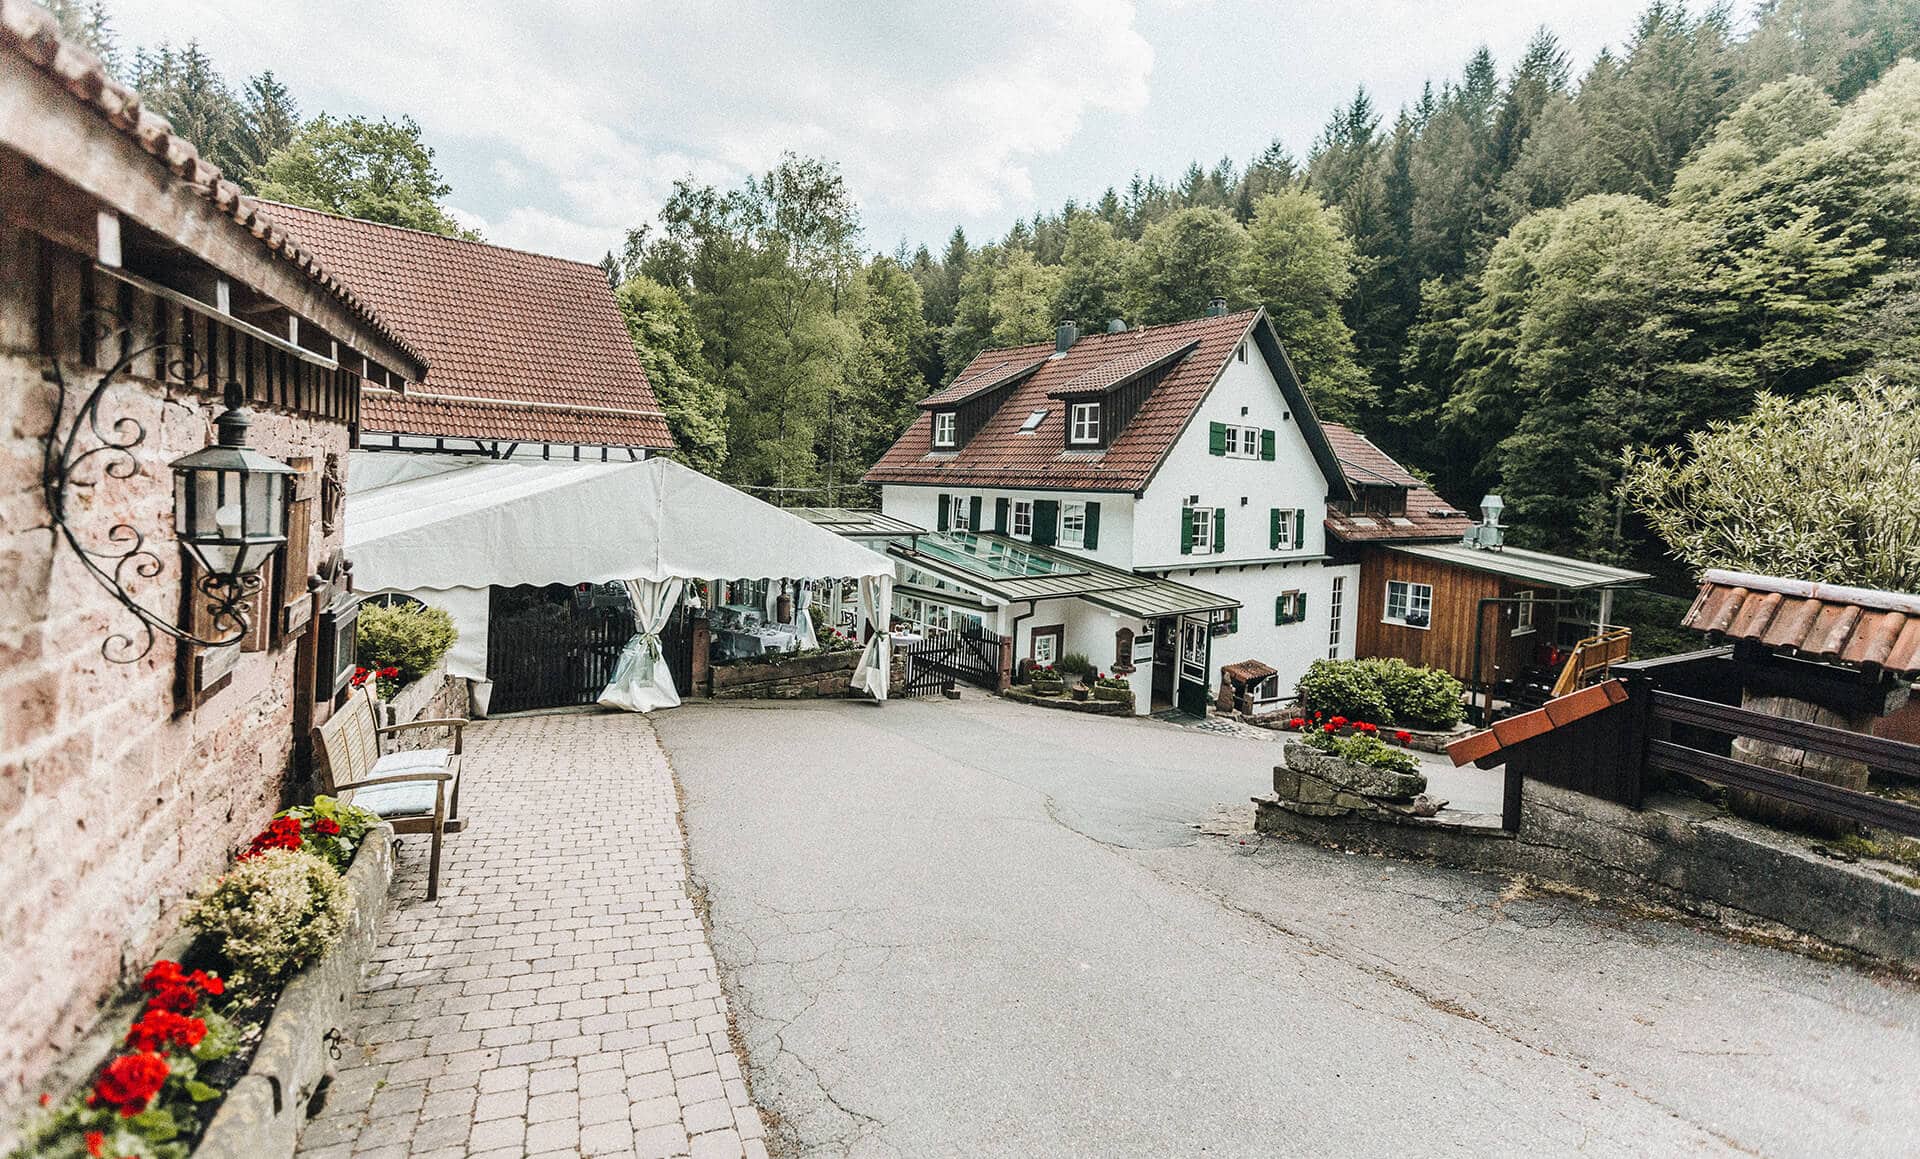 Eine malerische Dorfszene mit einem traditionellen weißen Haus, heute der Landgasthof Heidersbacher Mühle, umgeben von üppigem Grün und einer Kopfsteinpflasterstraße.